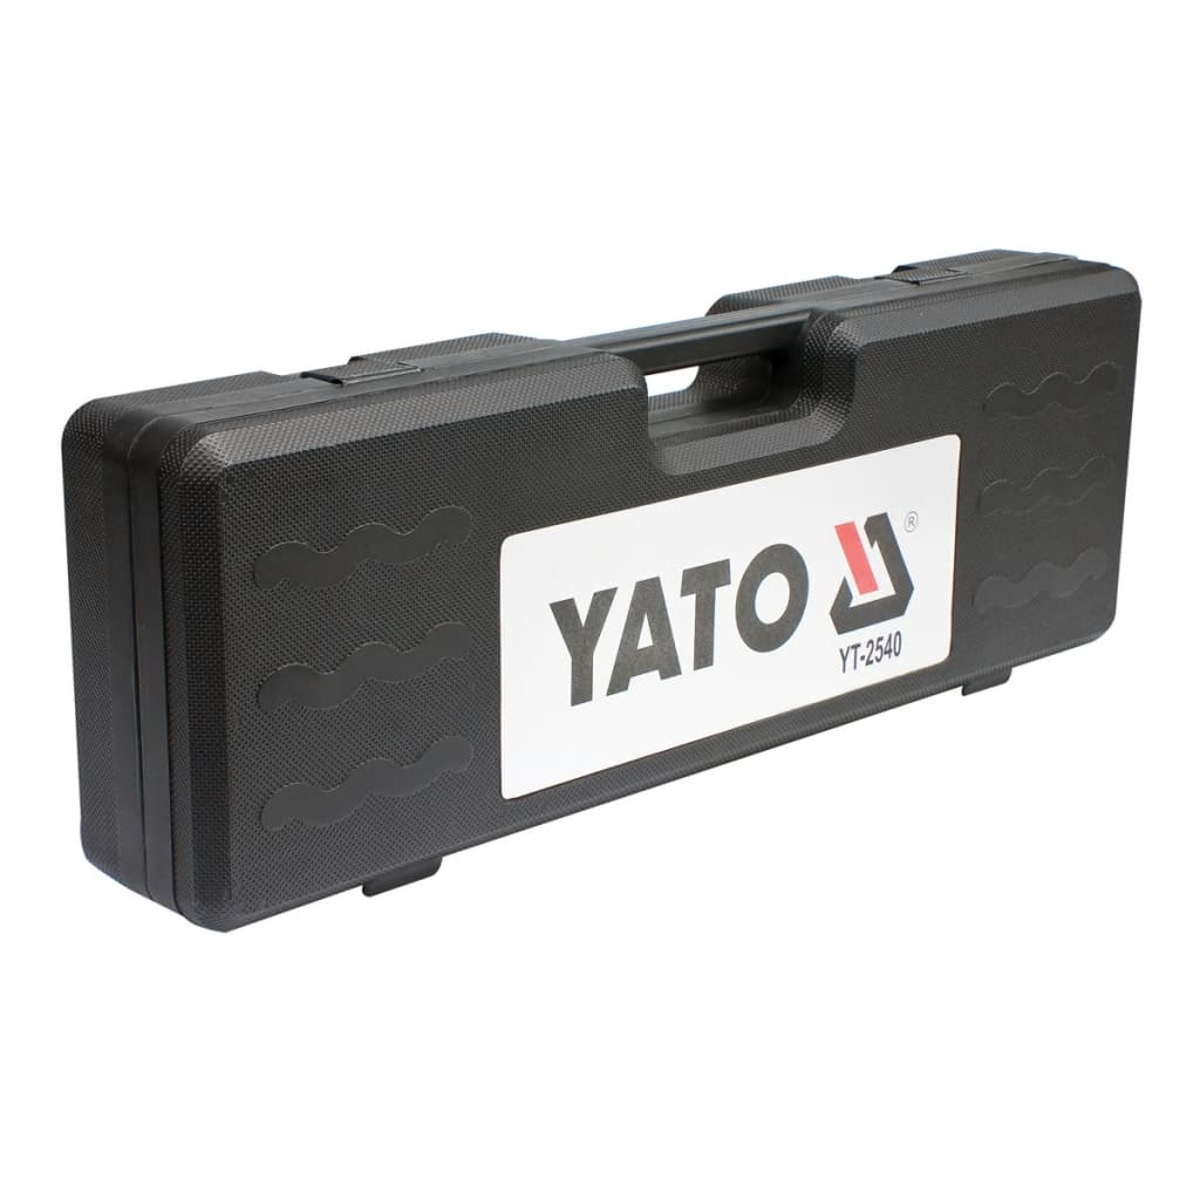 YATO 401897 Handwerkzeug-Set, Silber